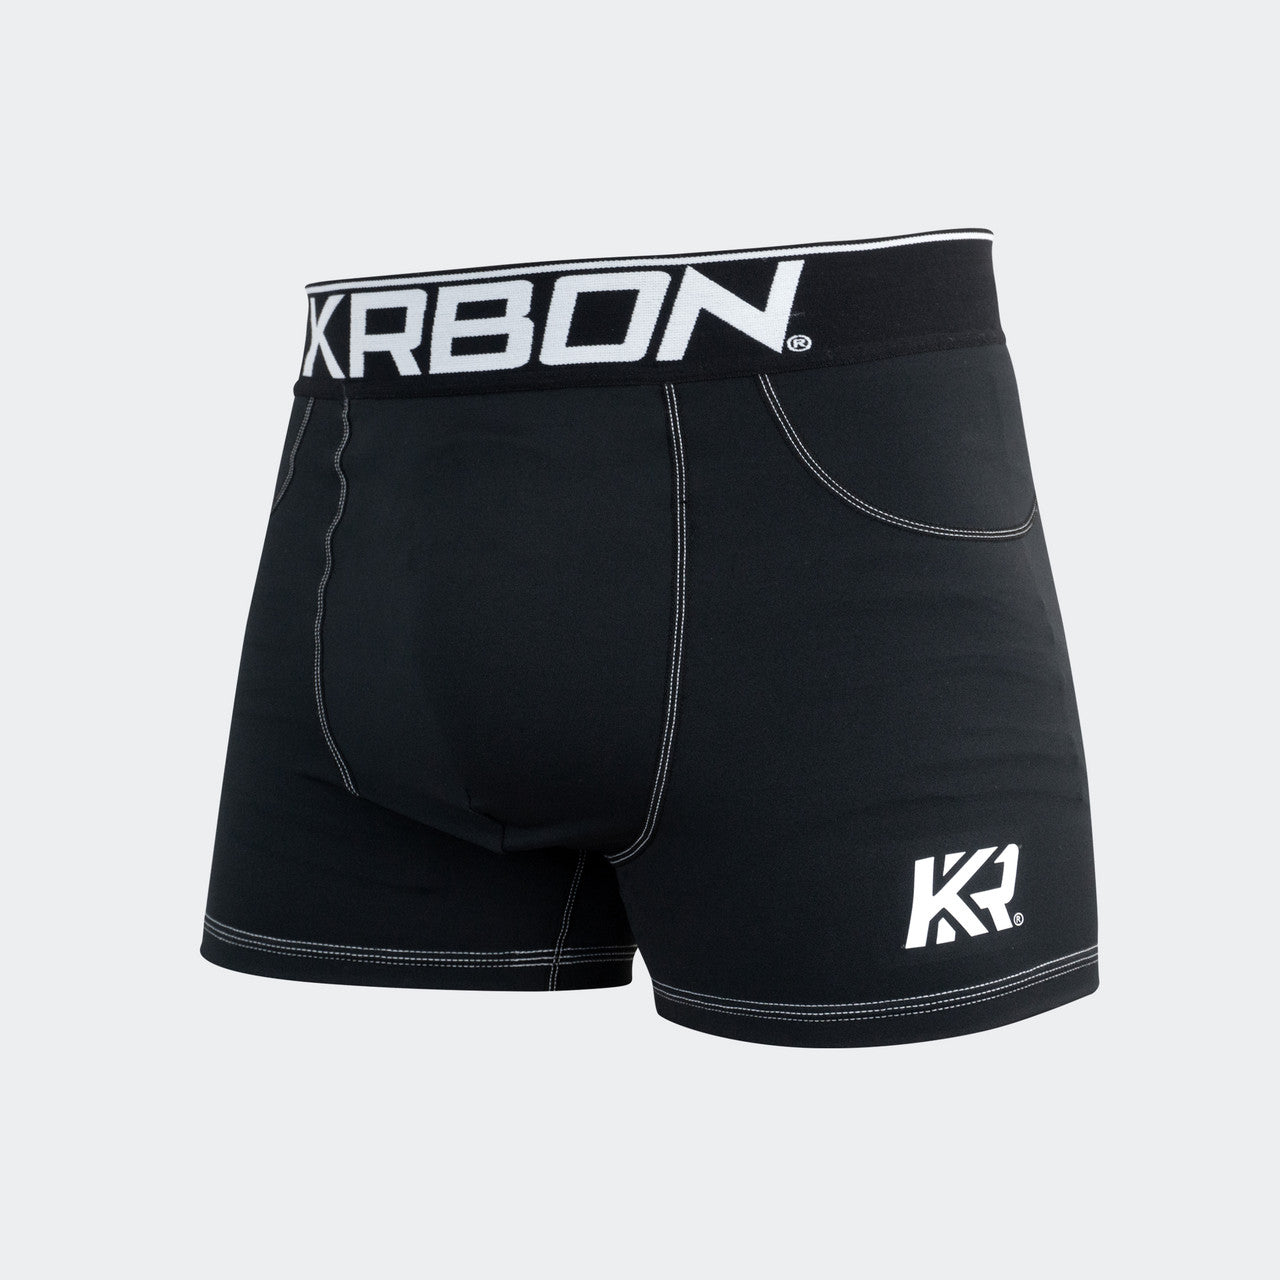 KRBON Pro Shorts med Susp